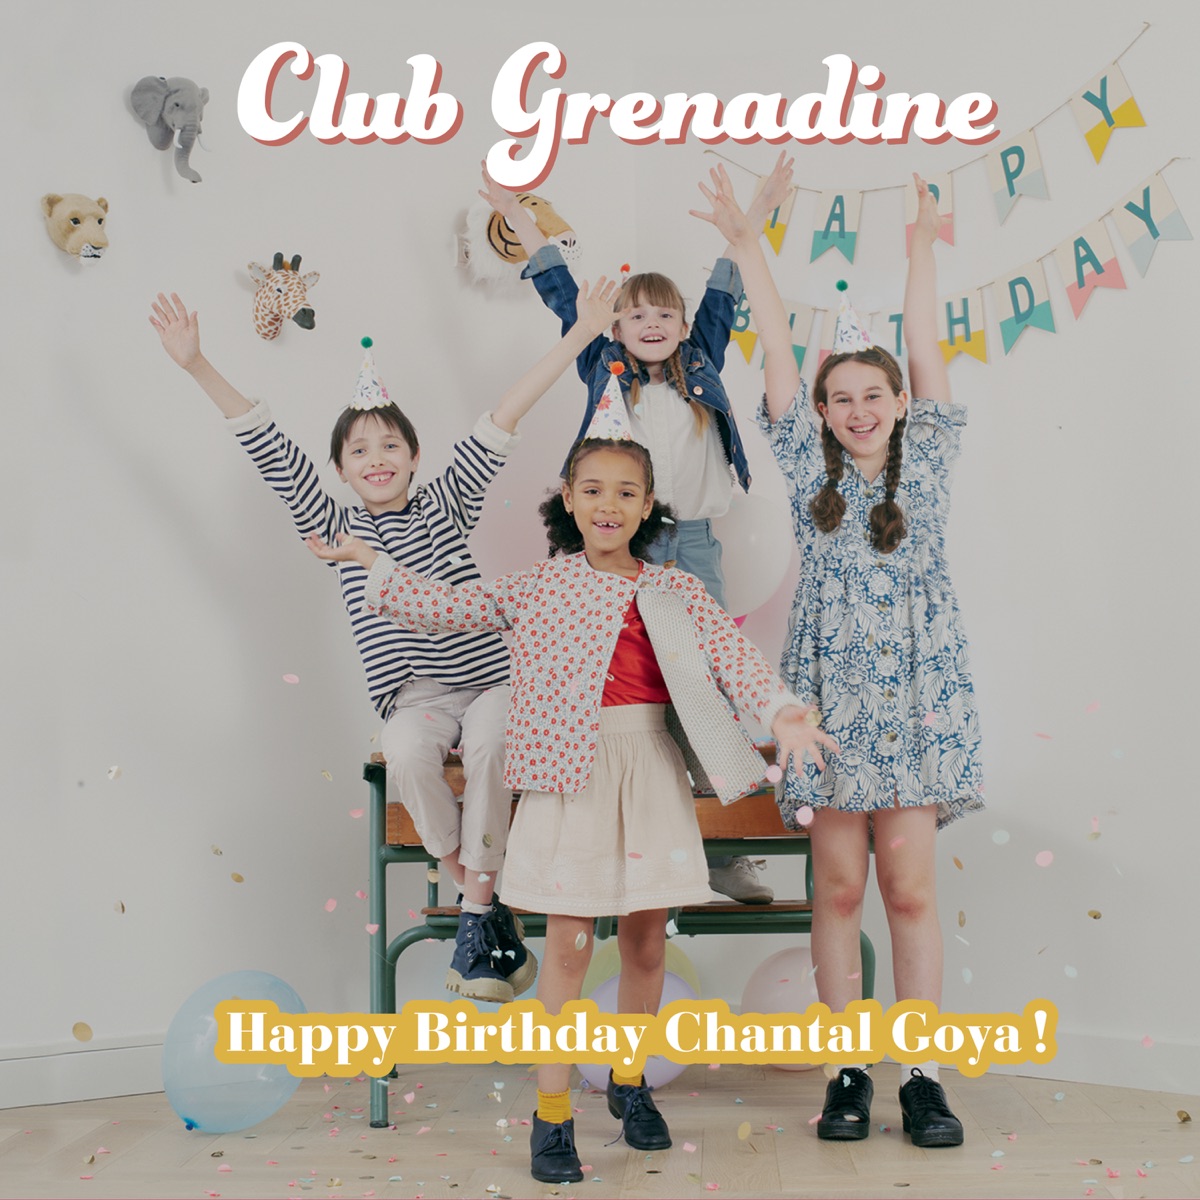 Happy Birthday Chantal Goya par Club Grenadine & Chantal Goya sur Apple  Music